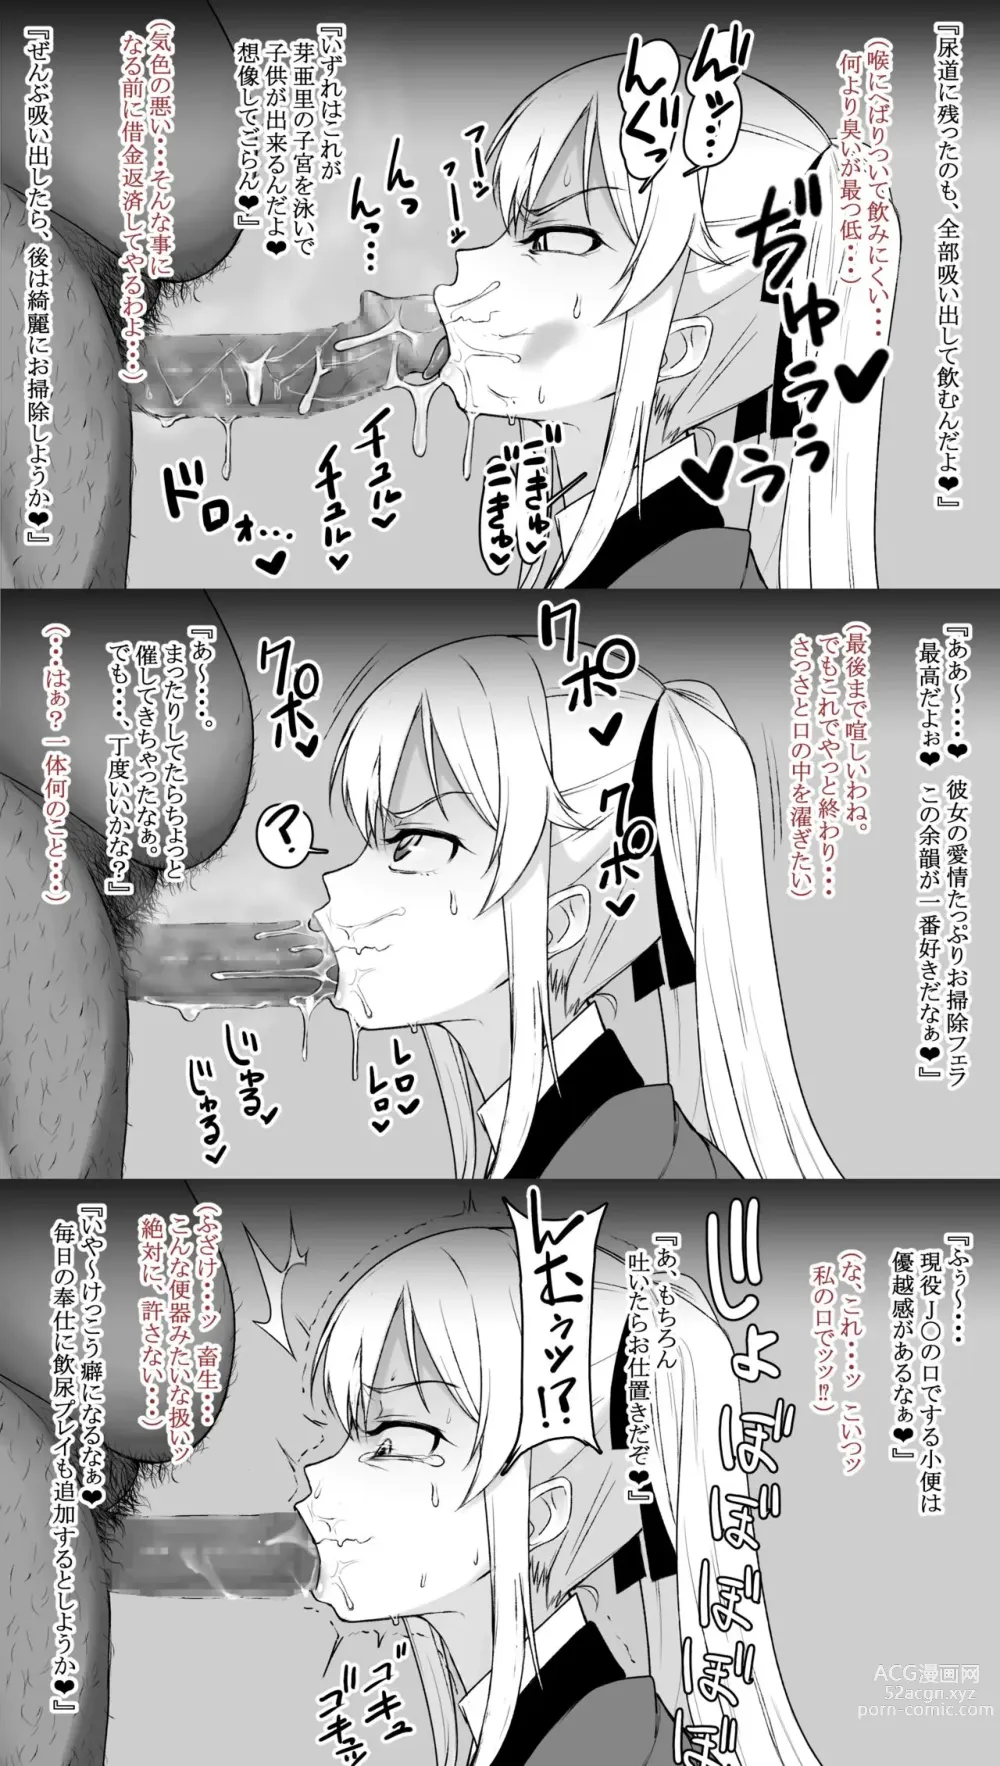 Page 4 of doujinshi Saotome me A sato, Kimo otoko konyakusha ni hōshi